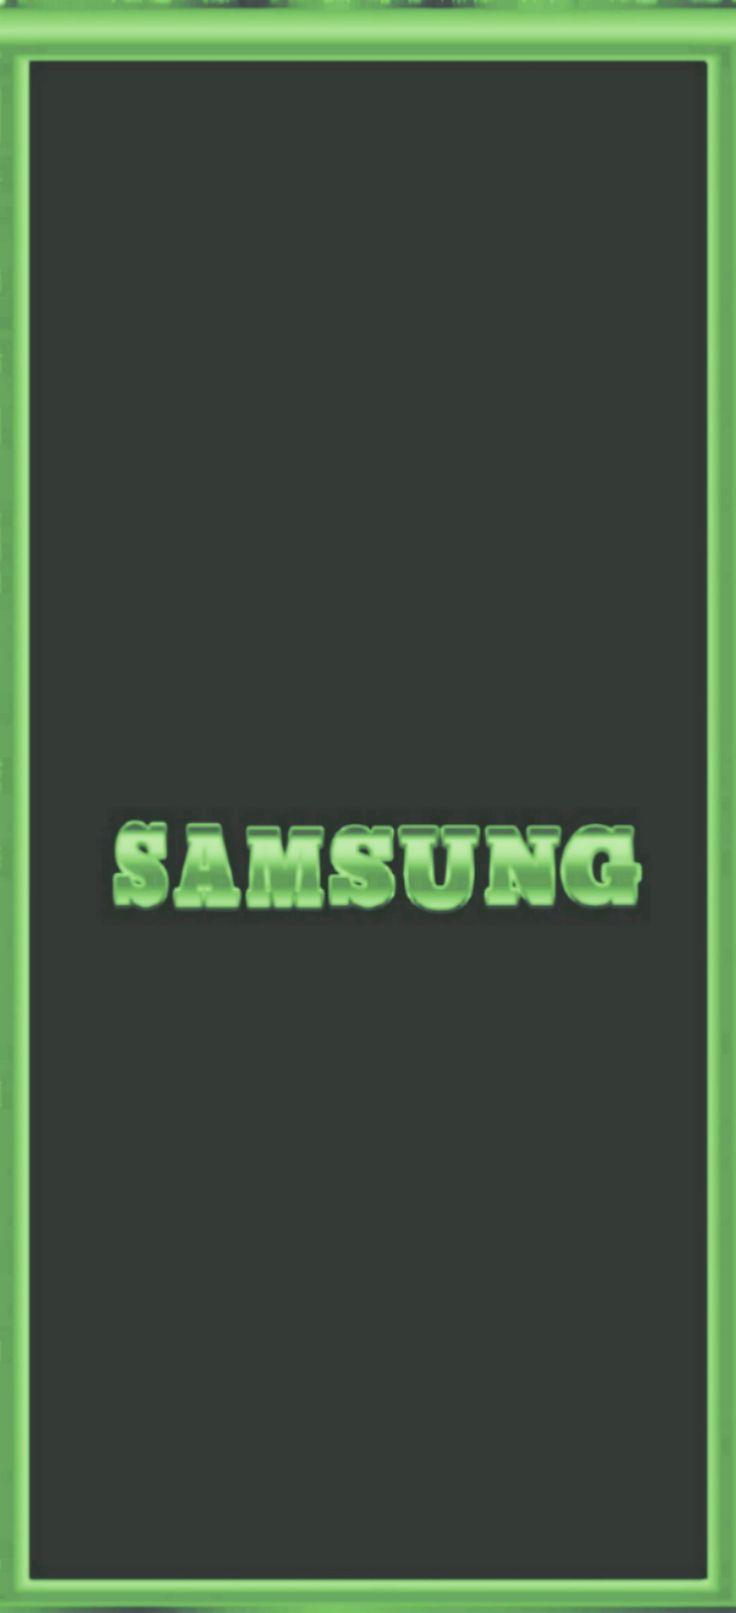 Al Hosam On Samsung Wallpaper Asus